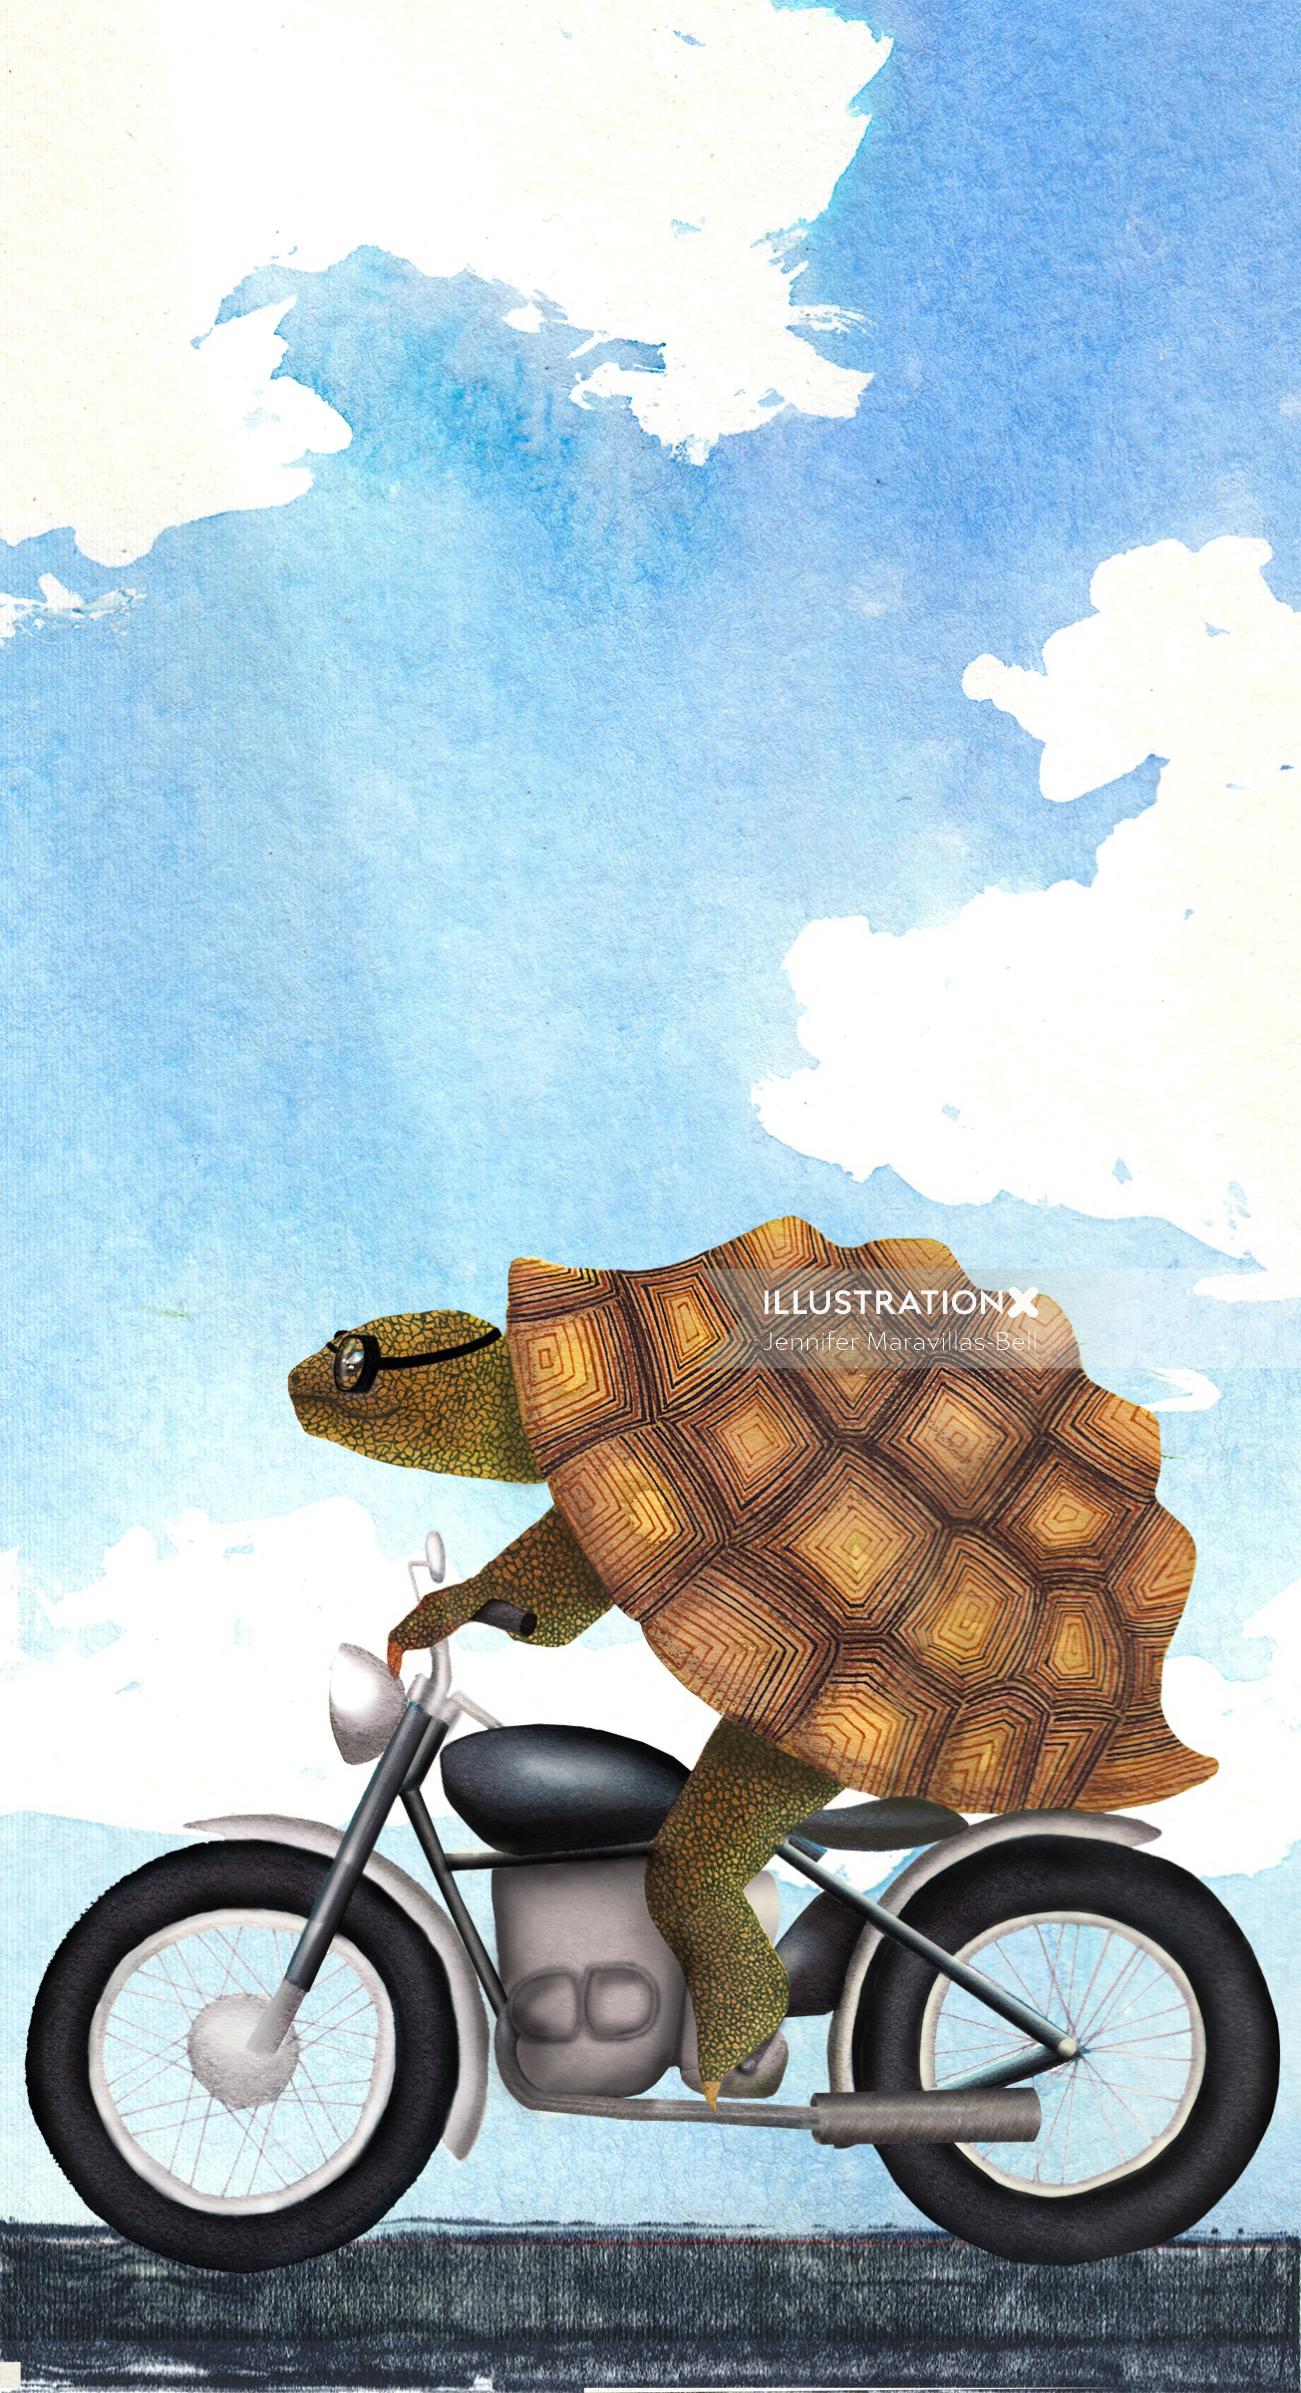 Una ilustración de tortuga en moto